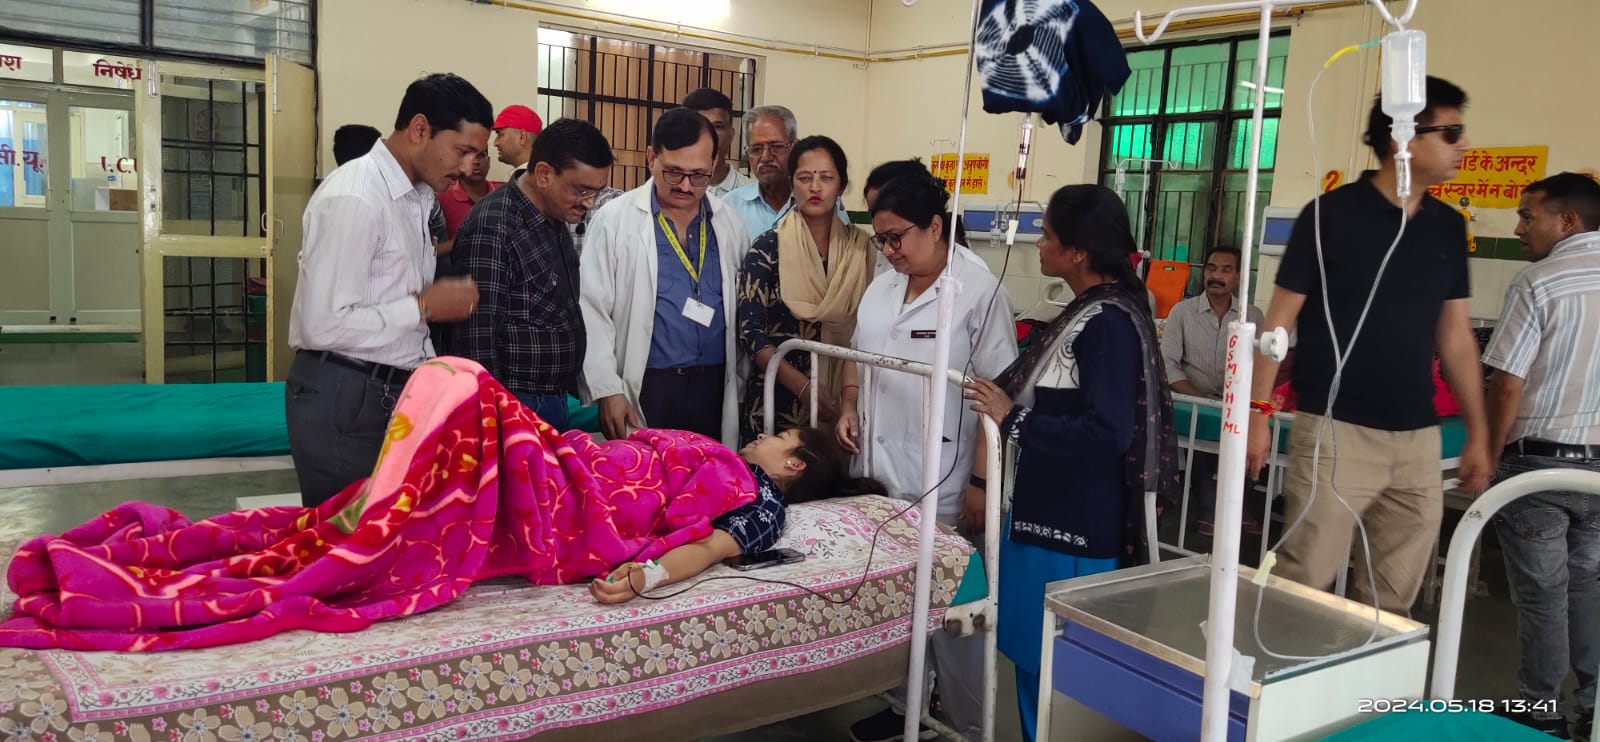 पूर्व मंत्री गोविंद सिंह माहरा की‌103वीं जयंती पर‌ कांग्रेस कार्यकर्ताओं ने चिकित्सालय में मरीजों को फल‌ वितरण किया